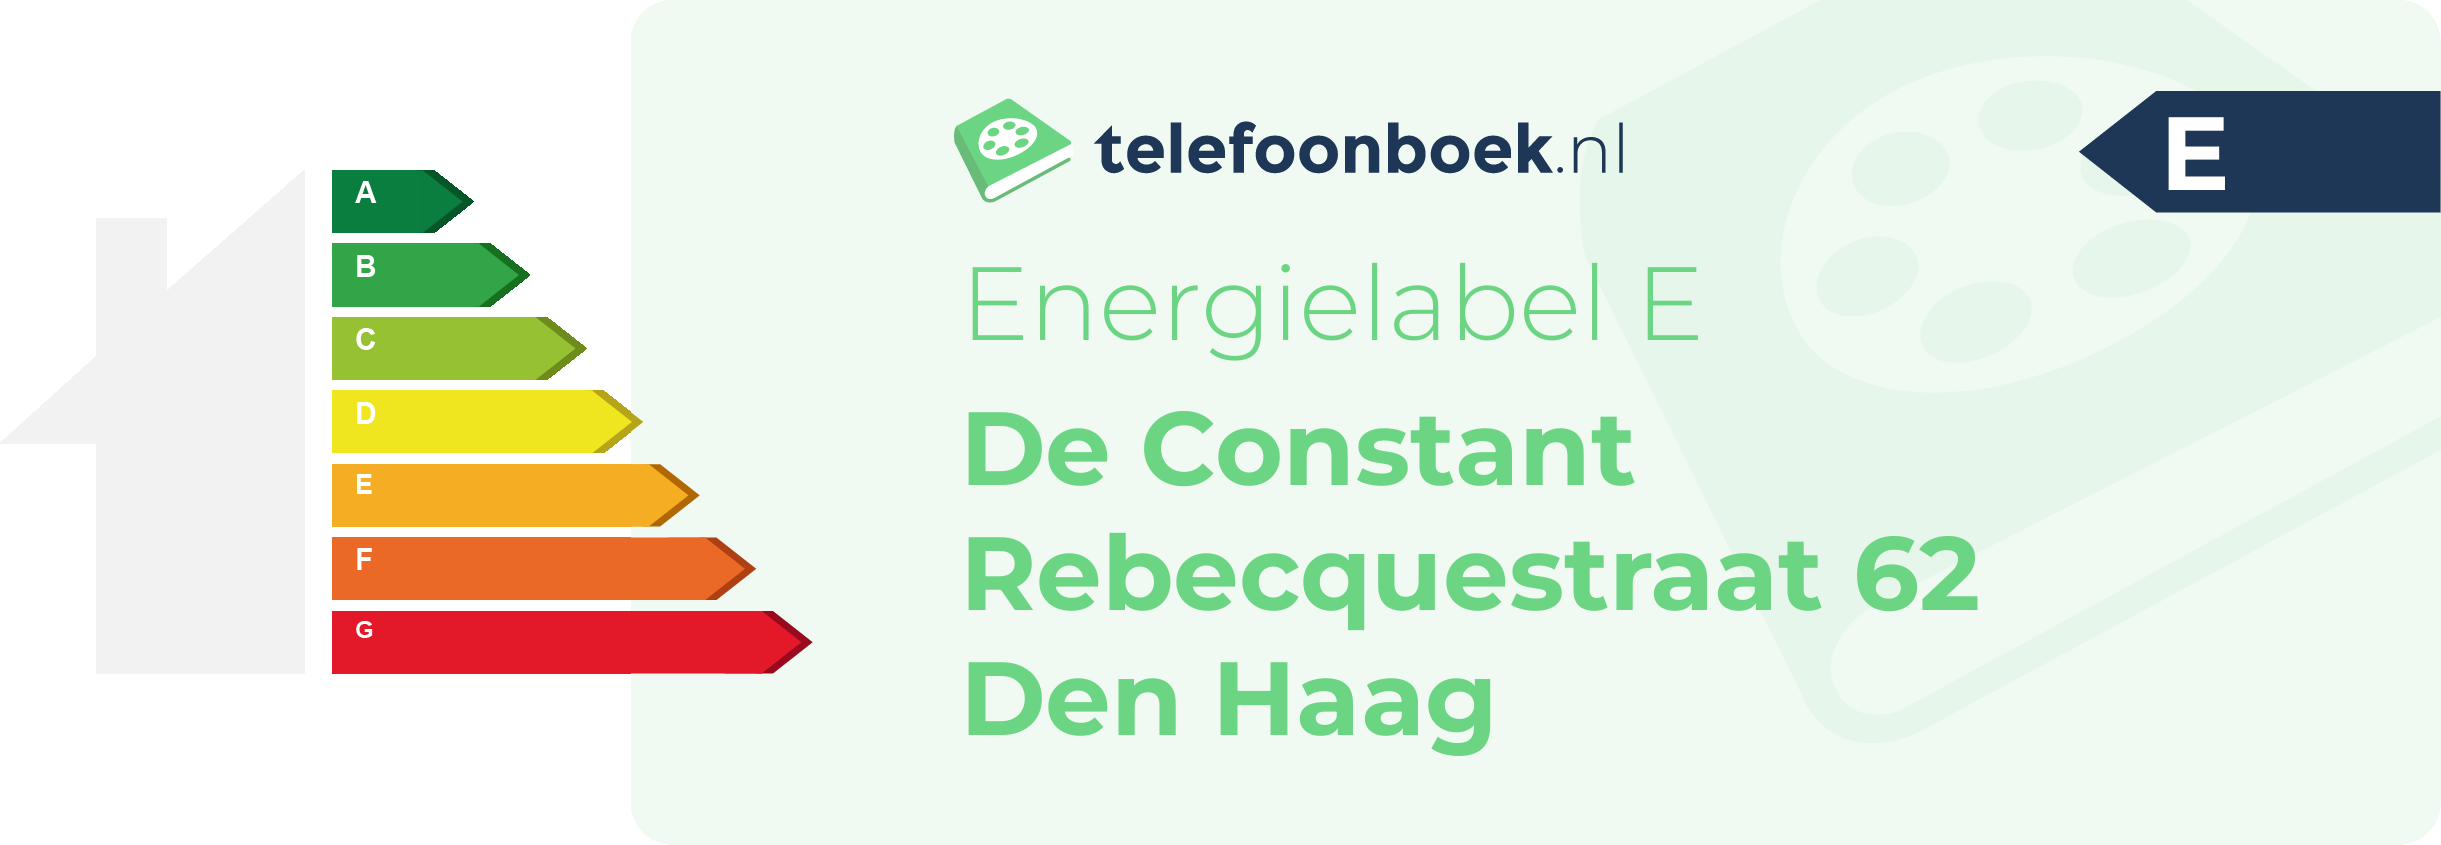 Energielabel De Constant Rebecquestraat 62 Den Haag